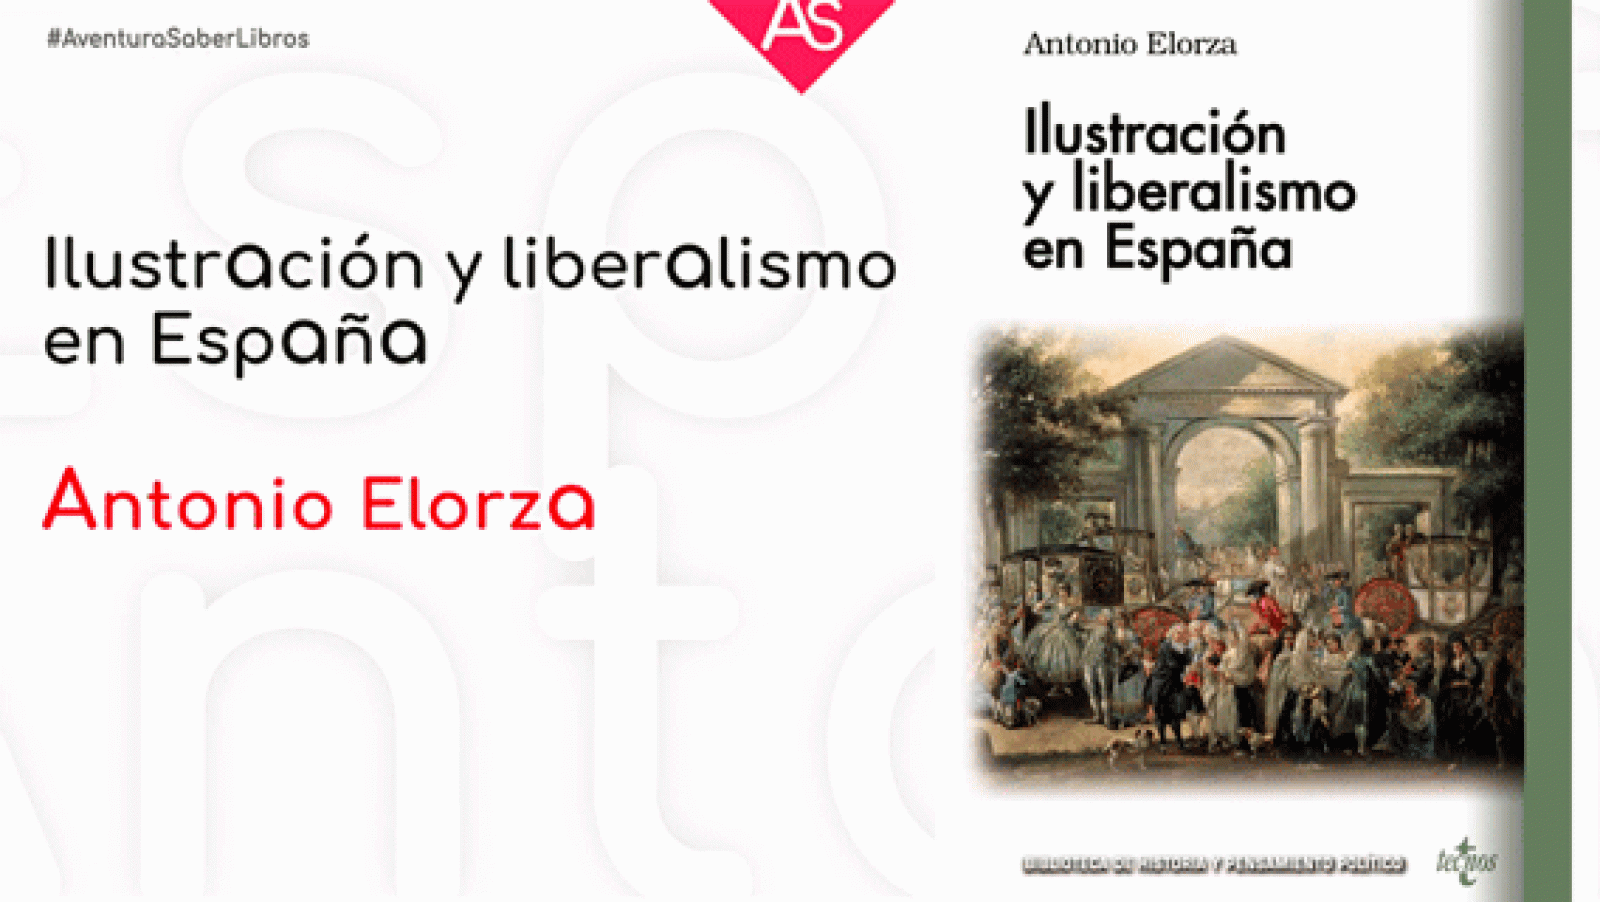 La aventura del saber - Ilustración y liberalismo en España